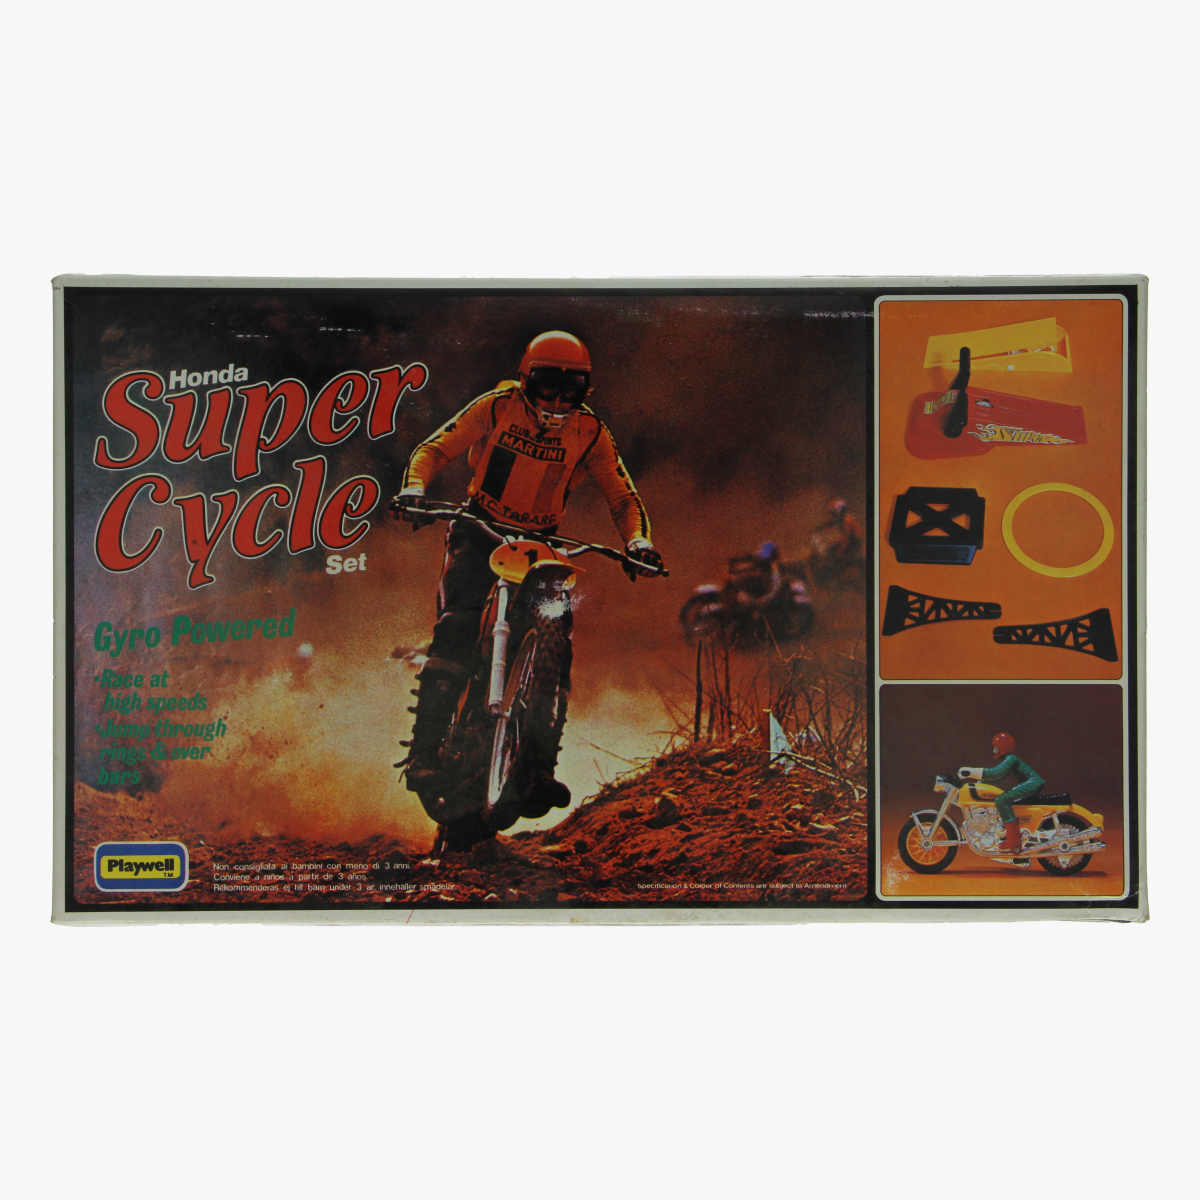 Afbeeldingen van Honda Super Cycle set. Speelgoed. Playwell.